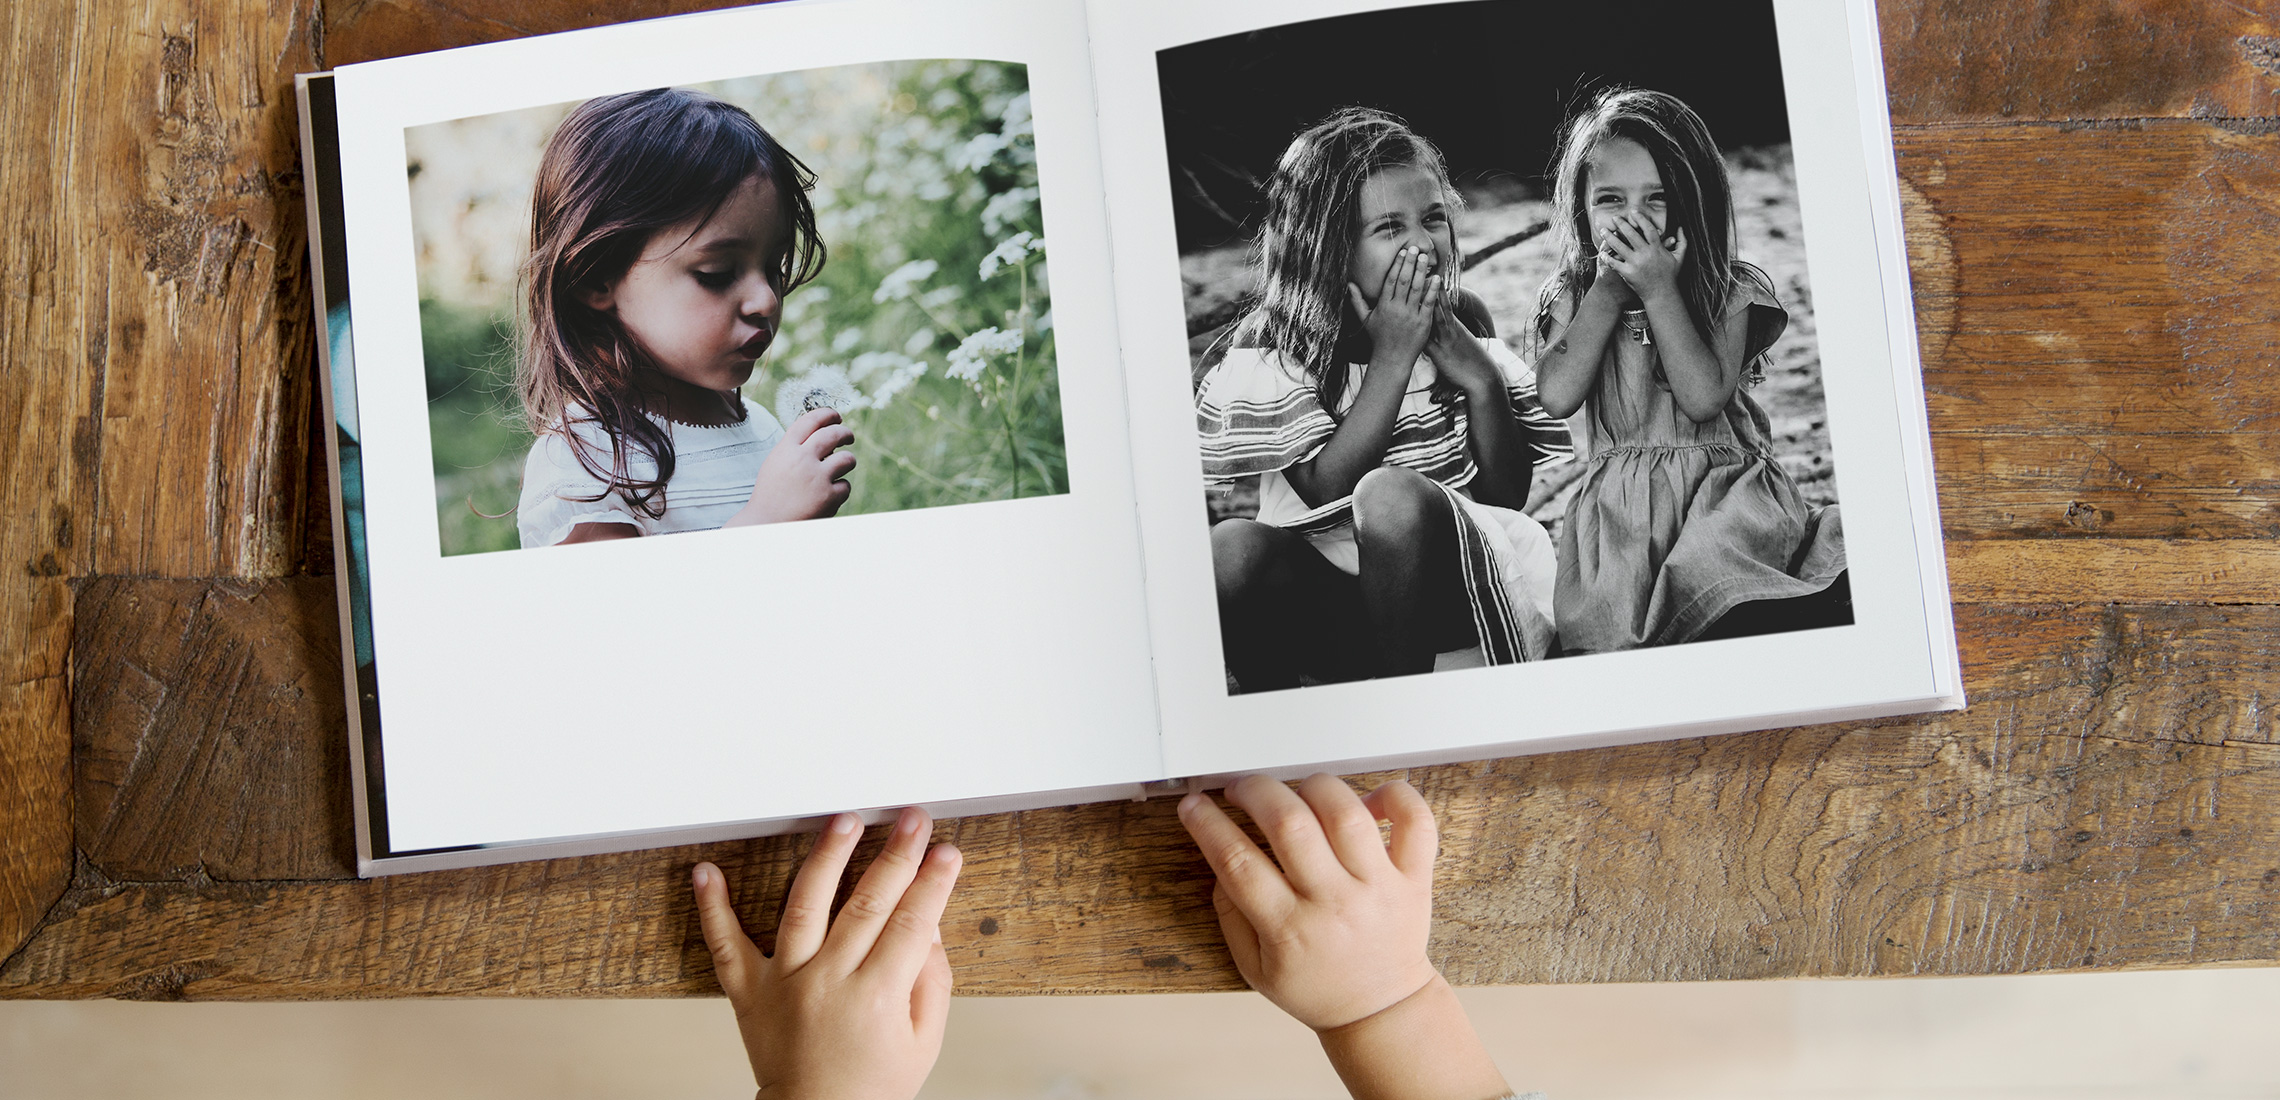 Un petit garçon feuilletant un livre de photos carré avec des photos de filles rieuses.